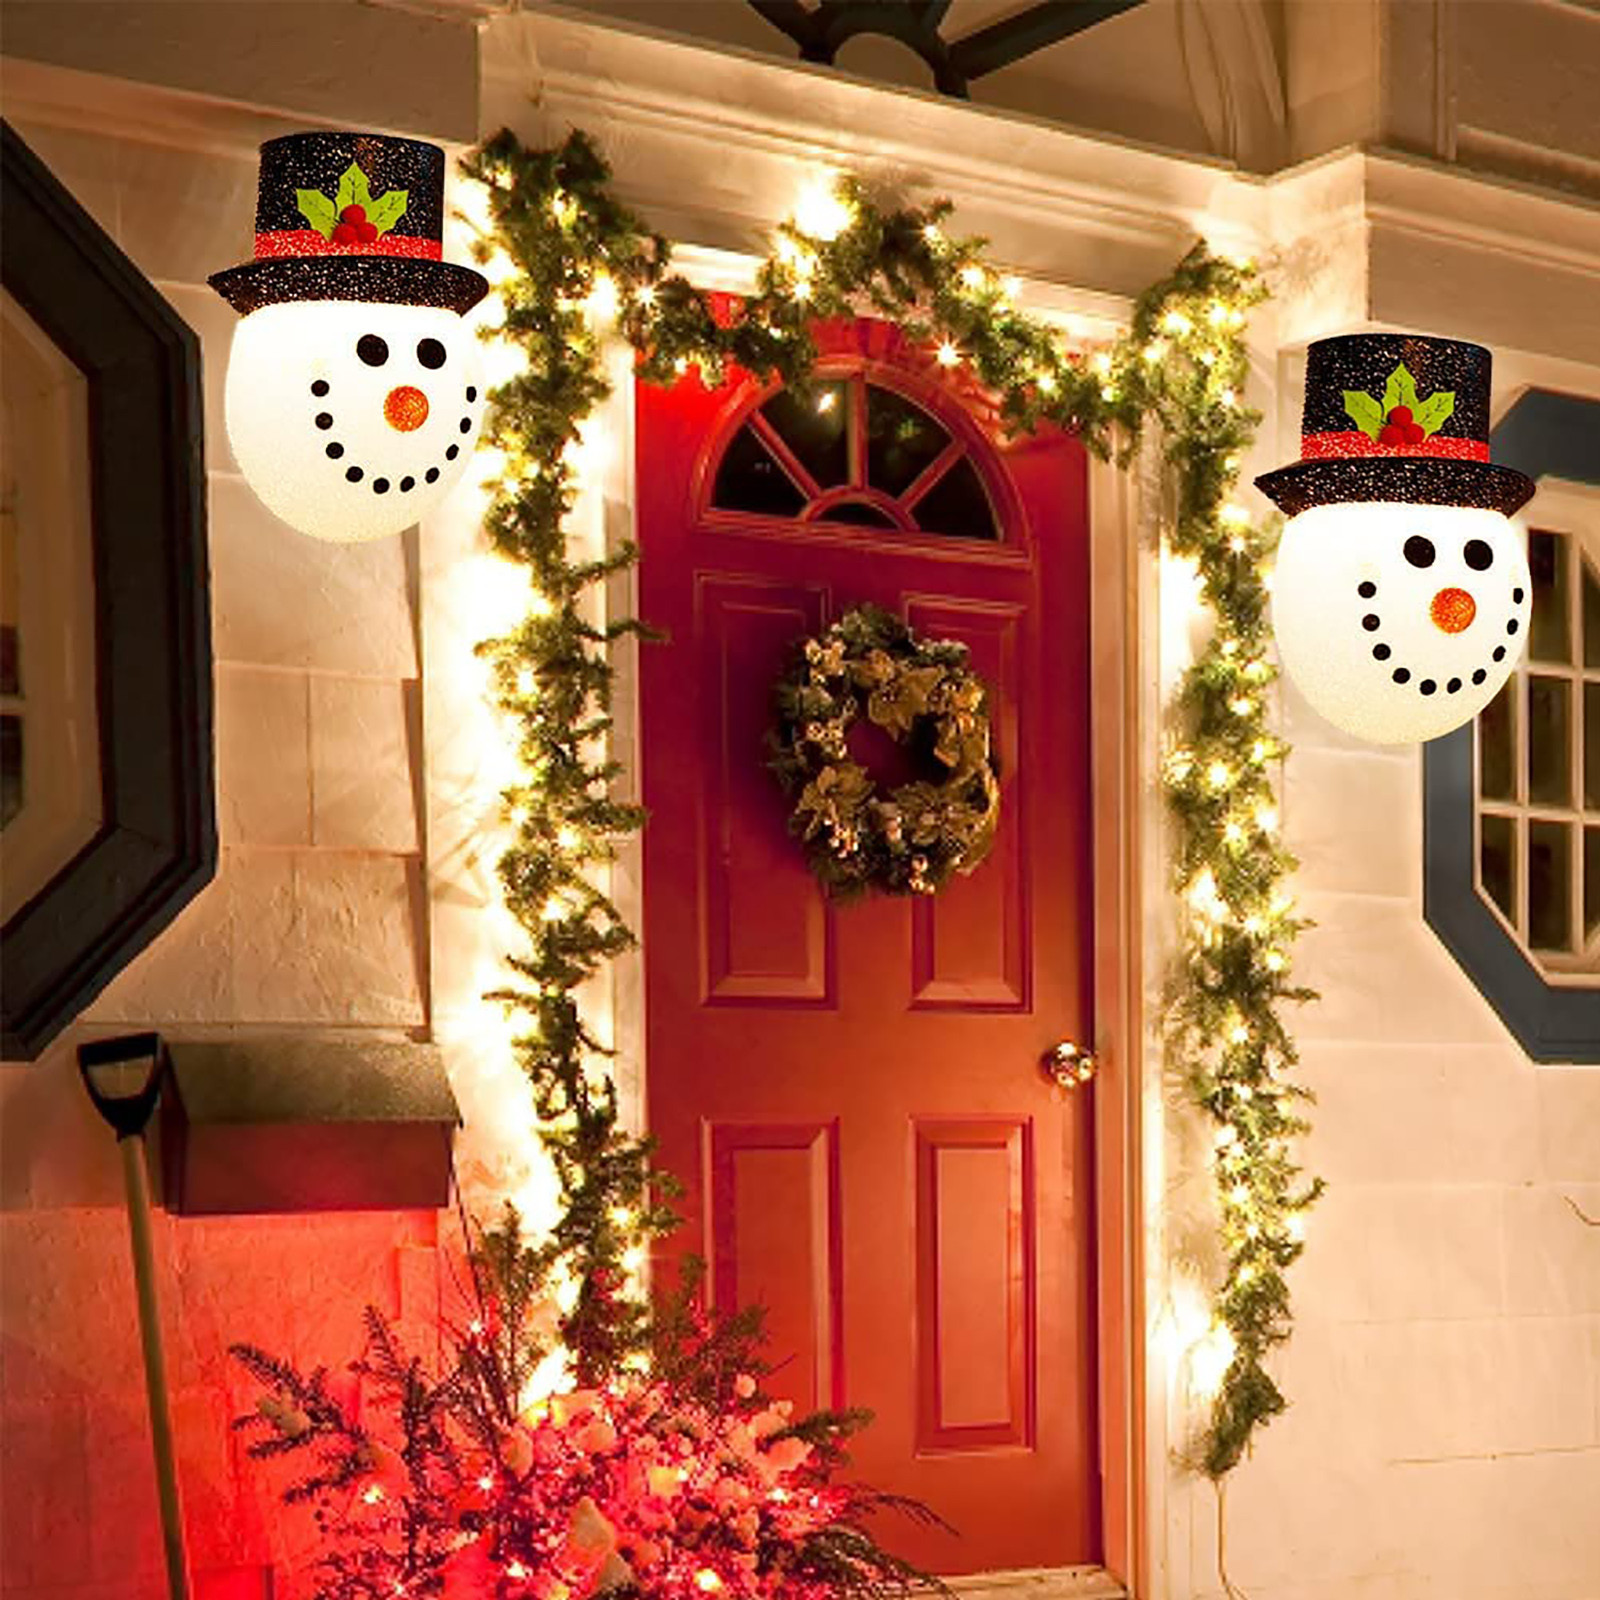 Christmas-Snowman-Lampshade-Corridor-Wall-Lamp-Decoration-Outside-Xmas-Lamp-Shade-Holiday-Christmas--1918460-10